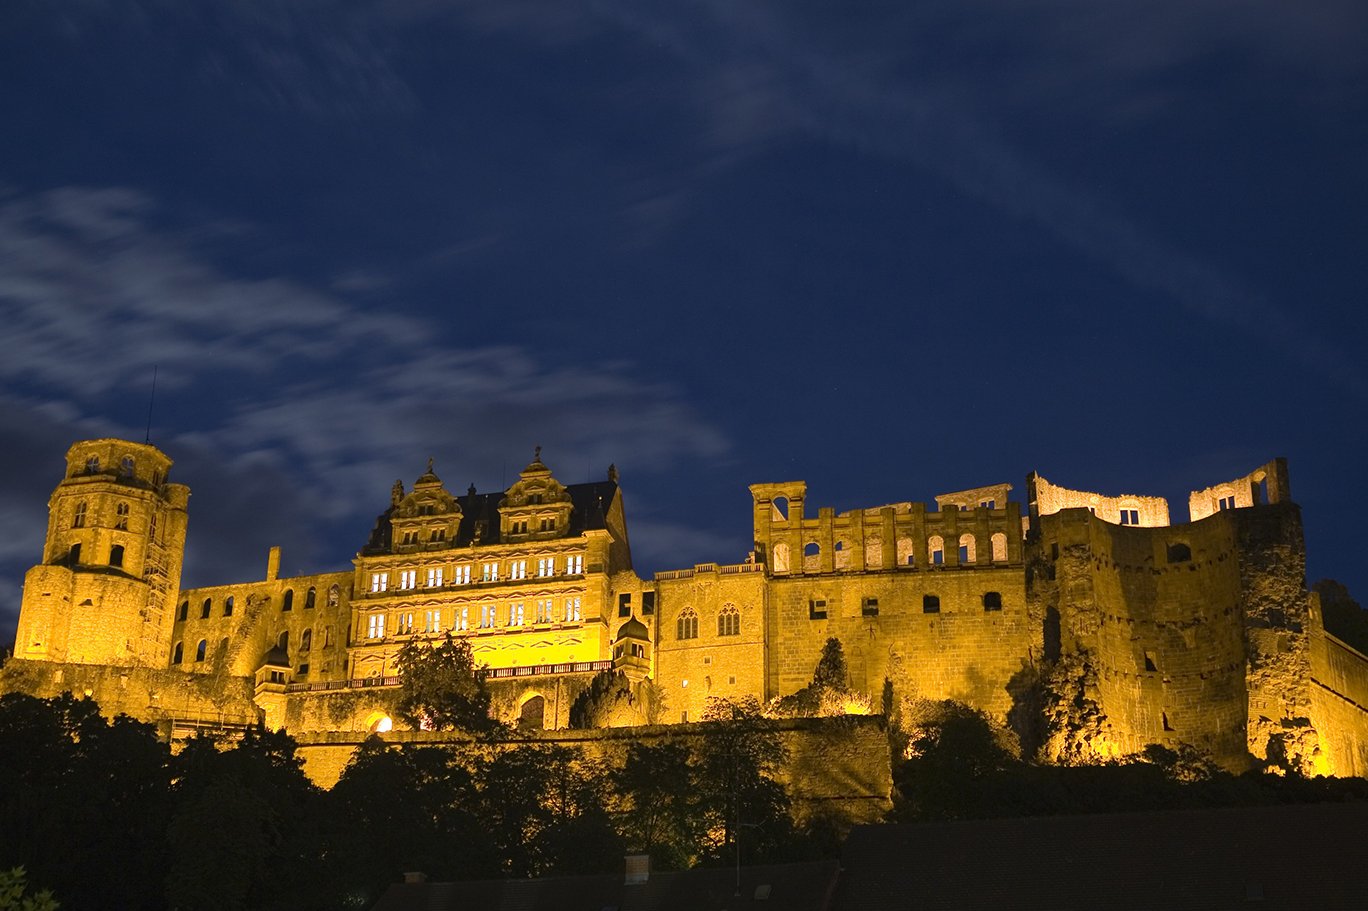 Die Schlossruine, das weltweit bekannte Wahrzeichen Heidelbergs.